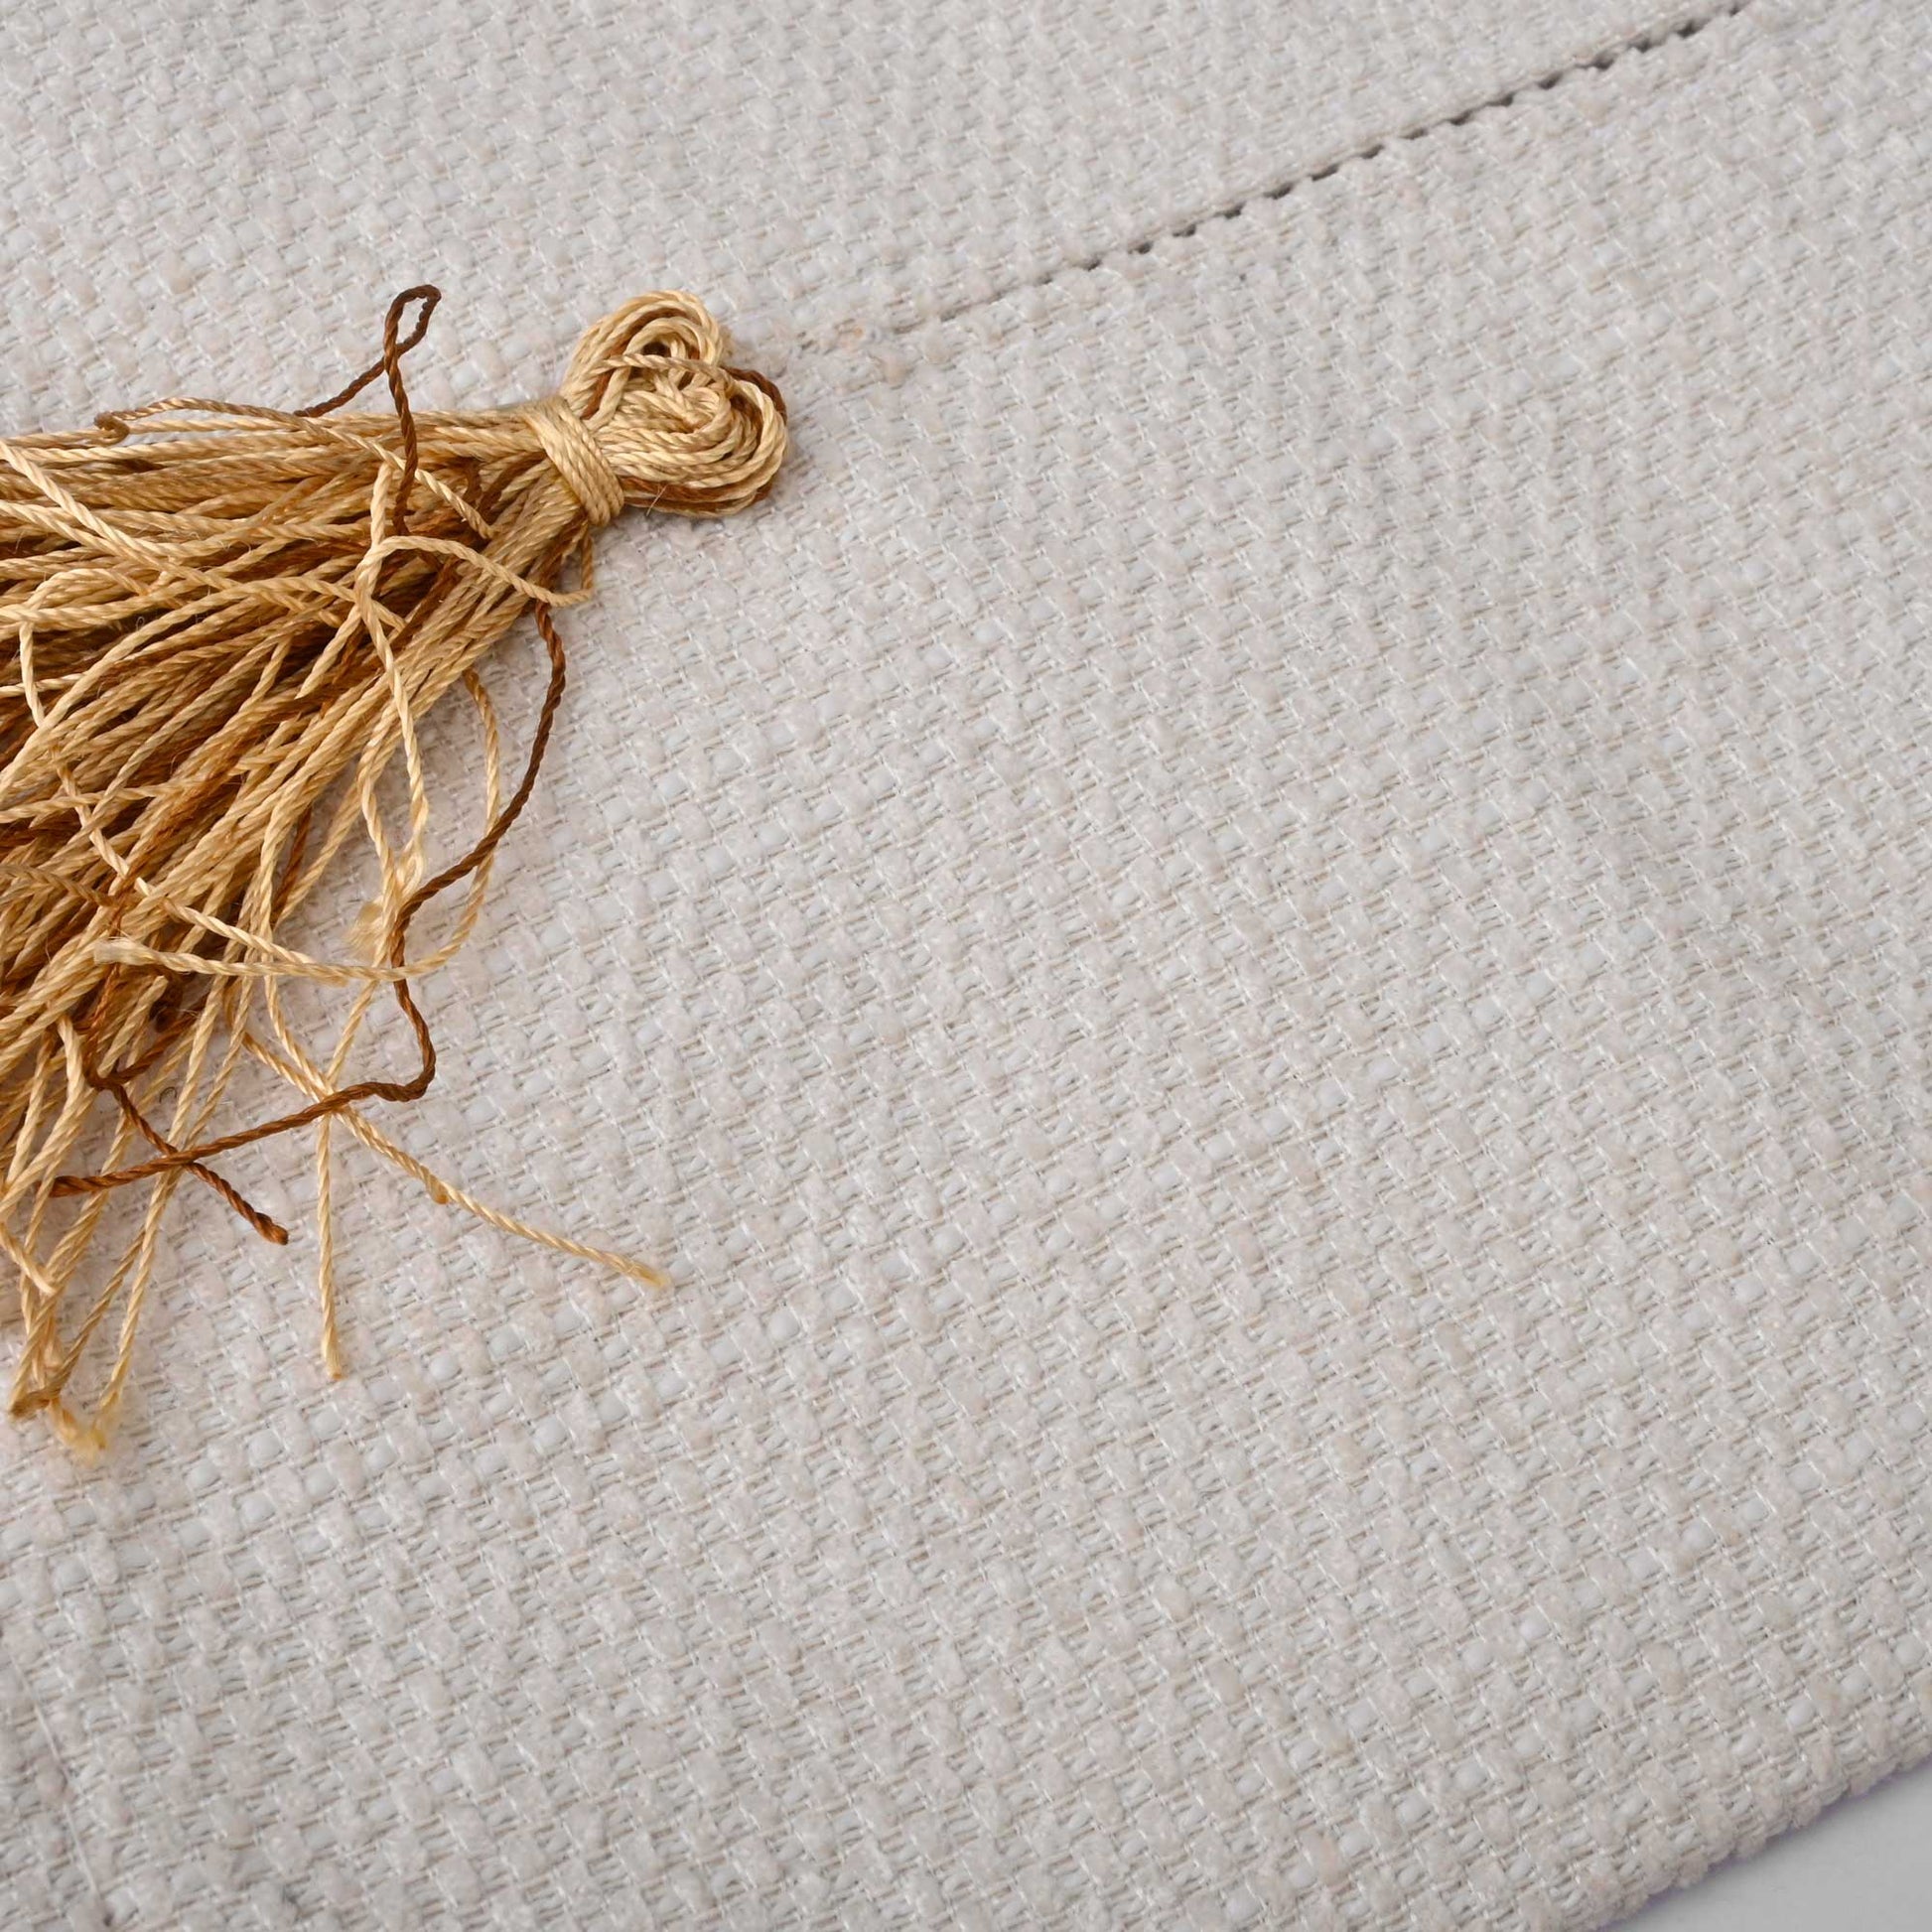 Linen Fabric Tissue Box Cover